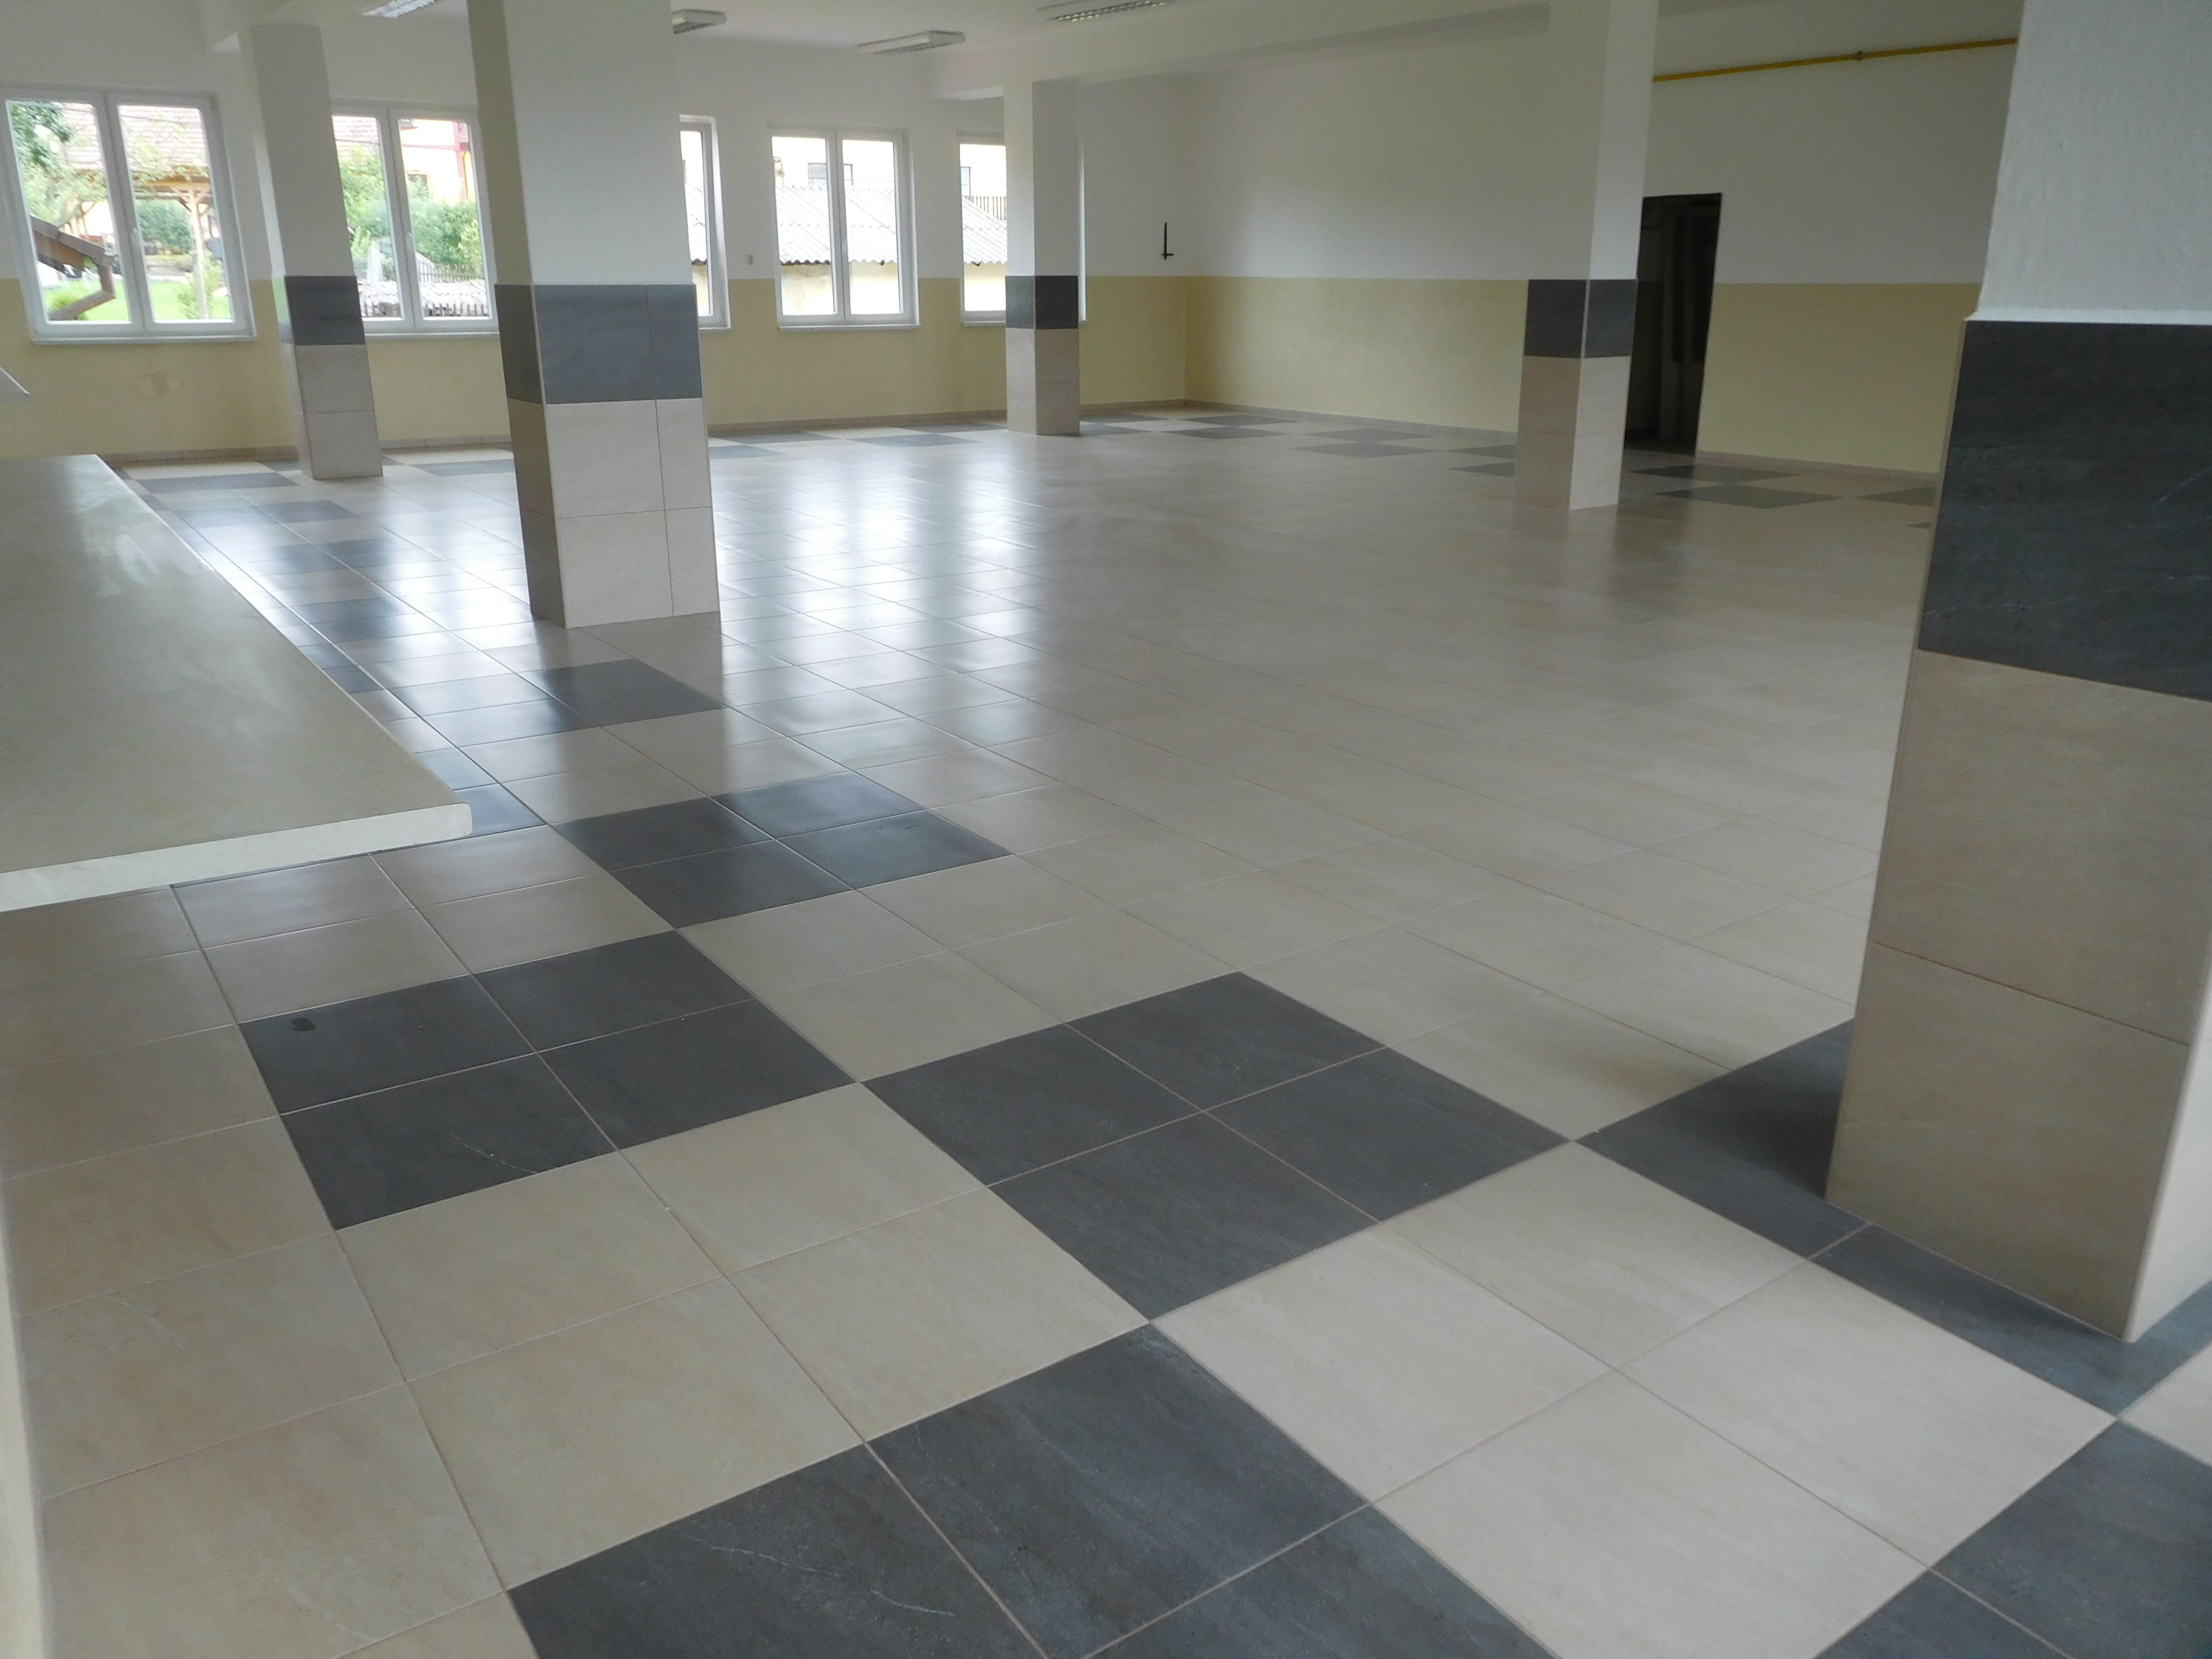 Oprava podlahové krytiny a pořízení vybavení školní jídelny ZŠ a MŠ Volenice